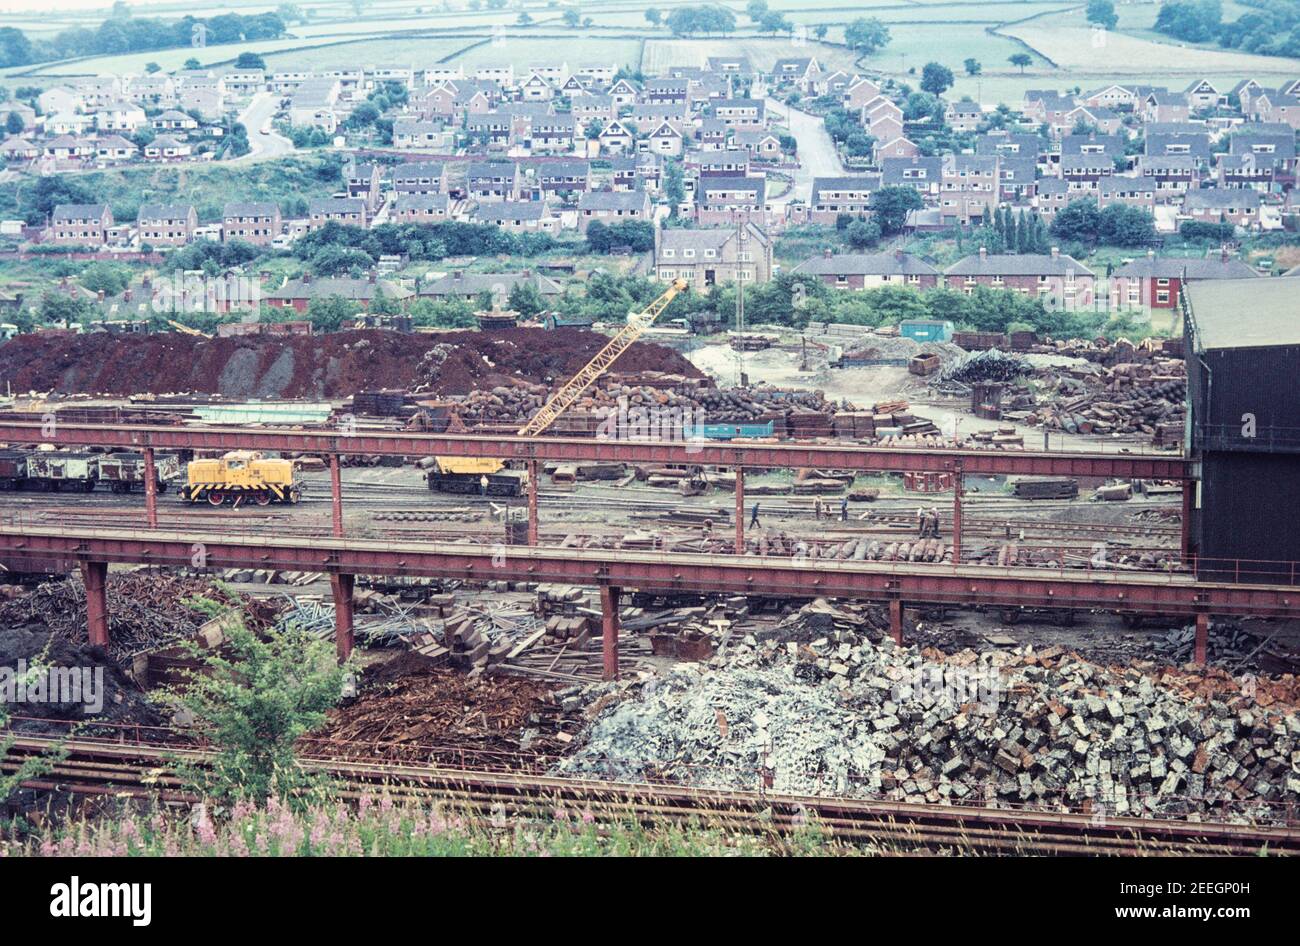 1977 Stocksbridge Sheffield - ferraille en attente de recyclage dans de nouveaux produits en acier à Stocksbridge Steel Works, British Steel Corporation ou Fox's Steel Works Stocksbridge Sheffield South Yorkshire Angleterre GB Europe Banque D'Images